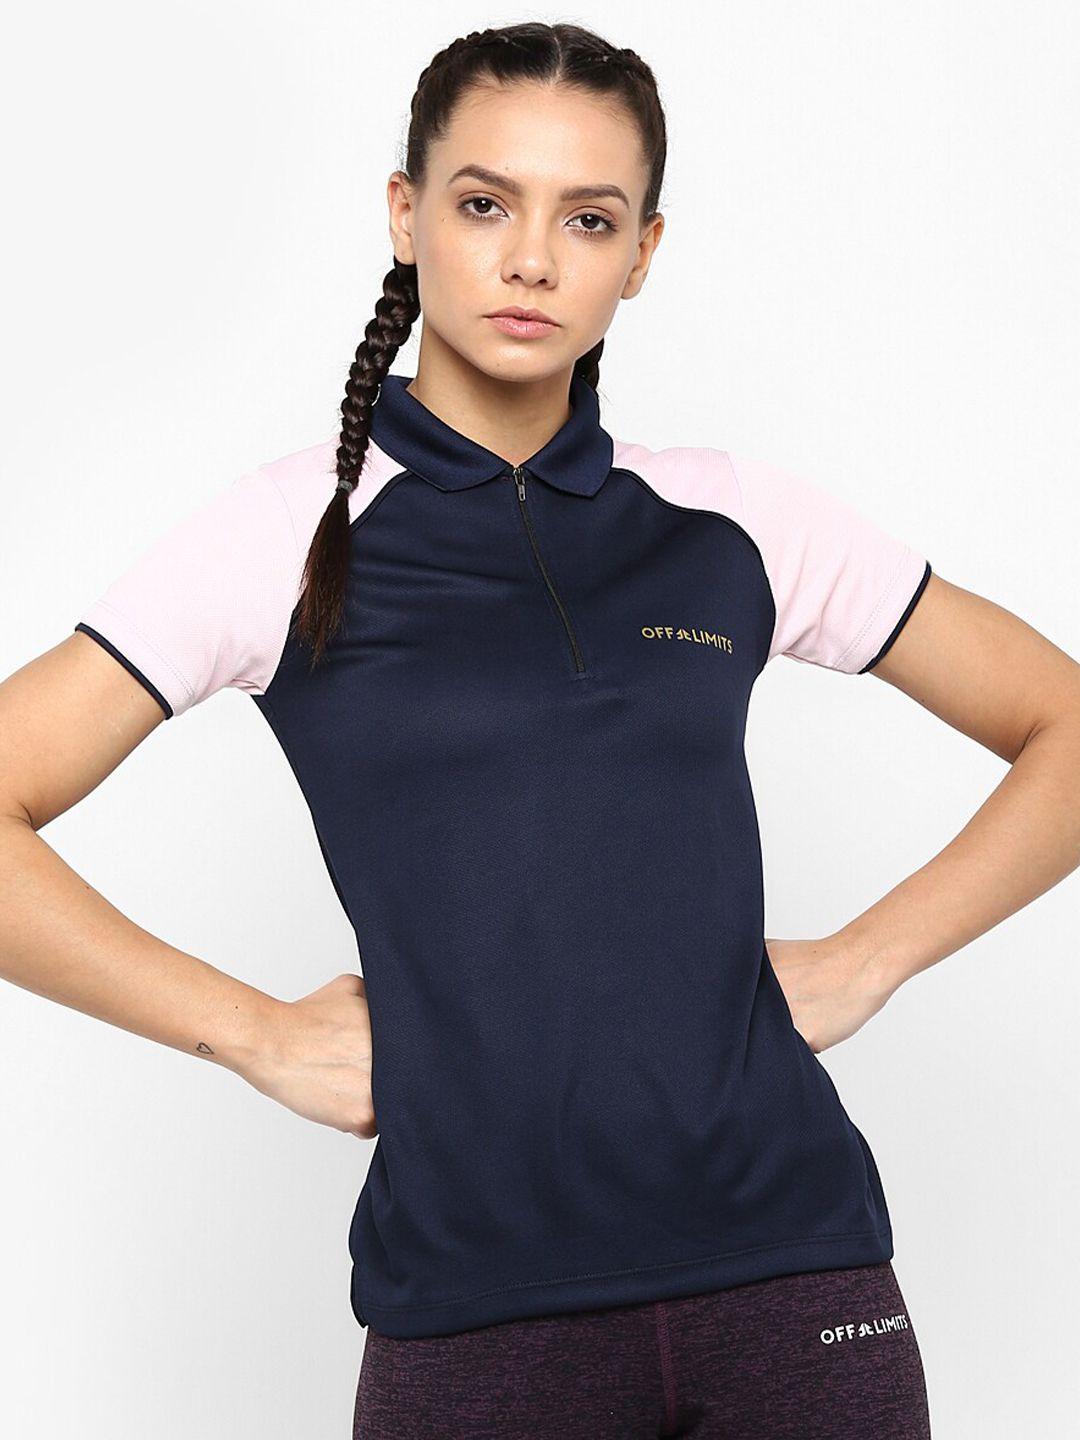 off limits women navy blue & pink colourblocked t-shirt